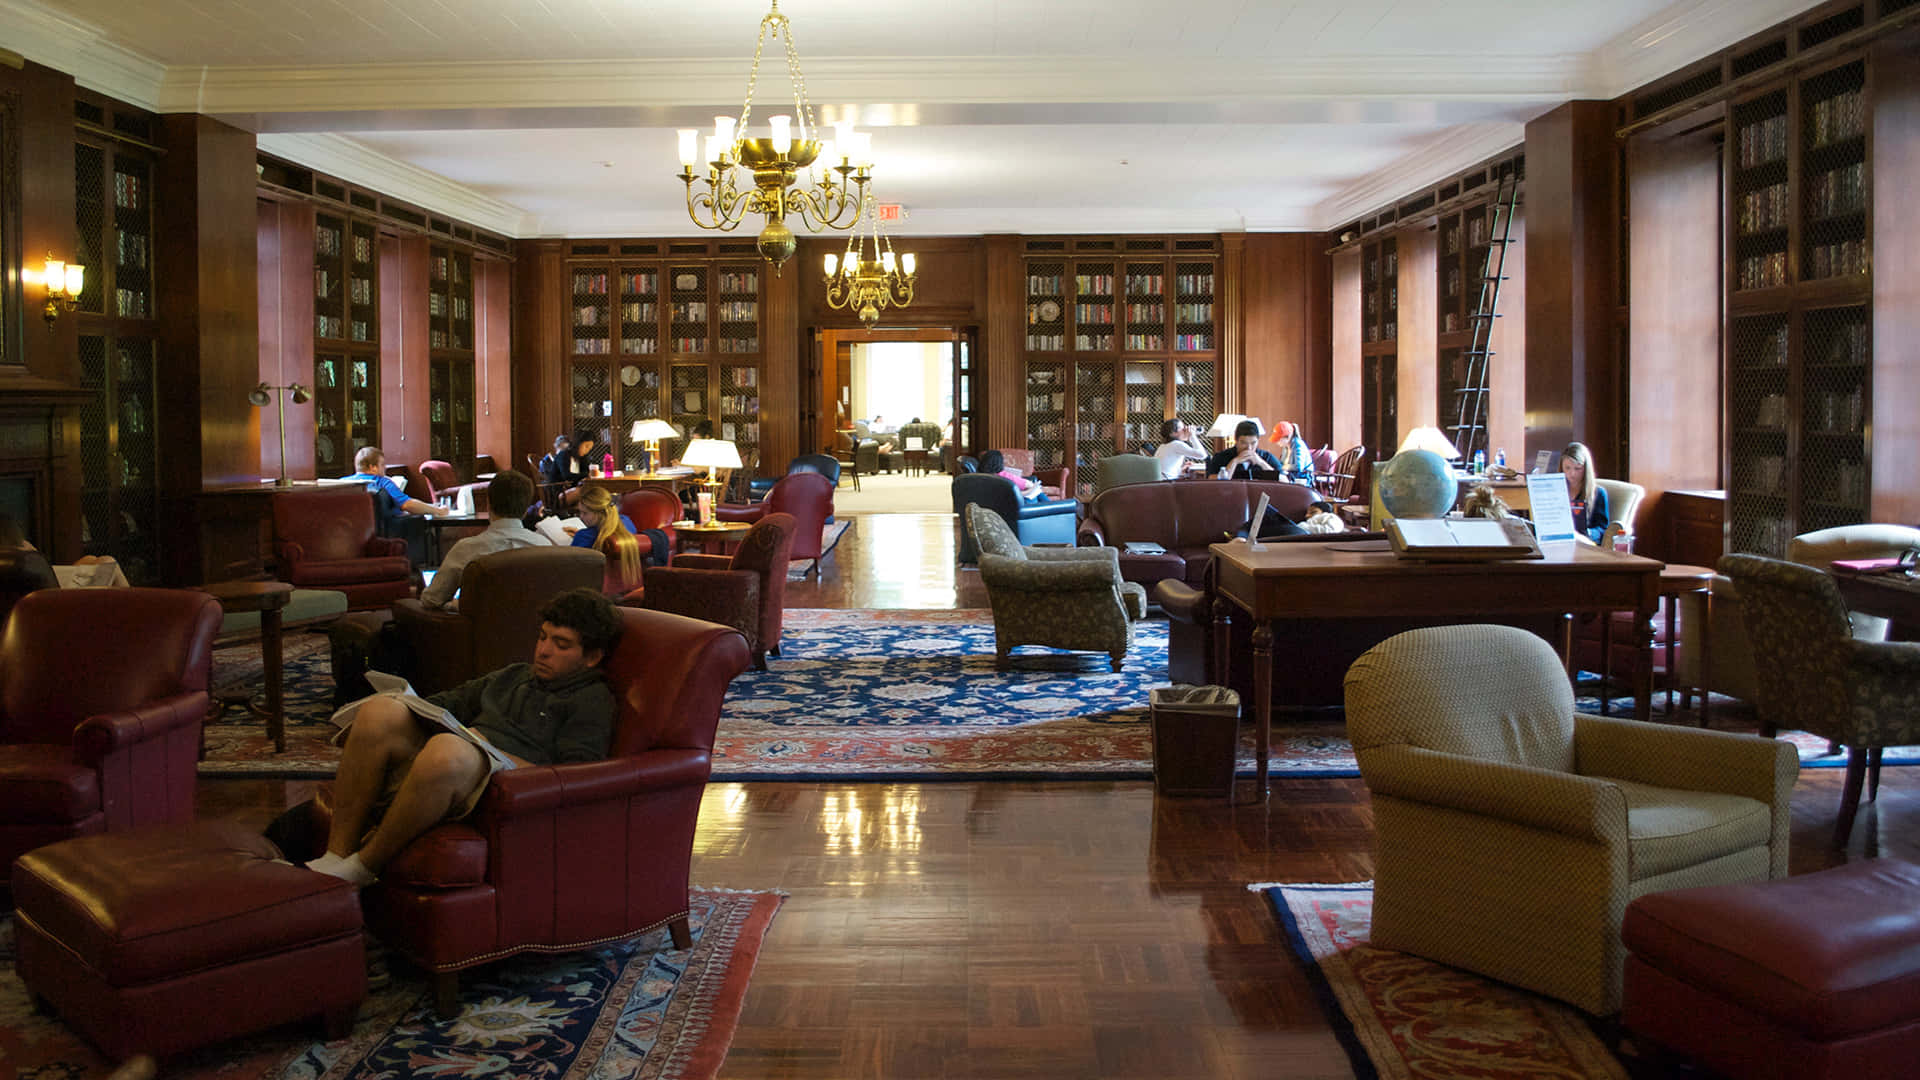 Unagran Biblioteca Con Muchas Personas Sentadas En Sillas